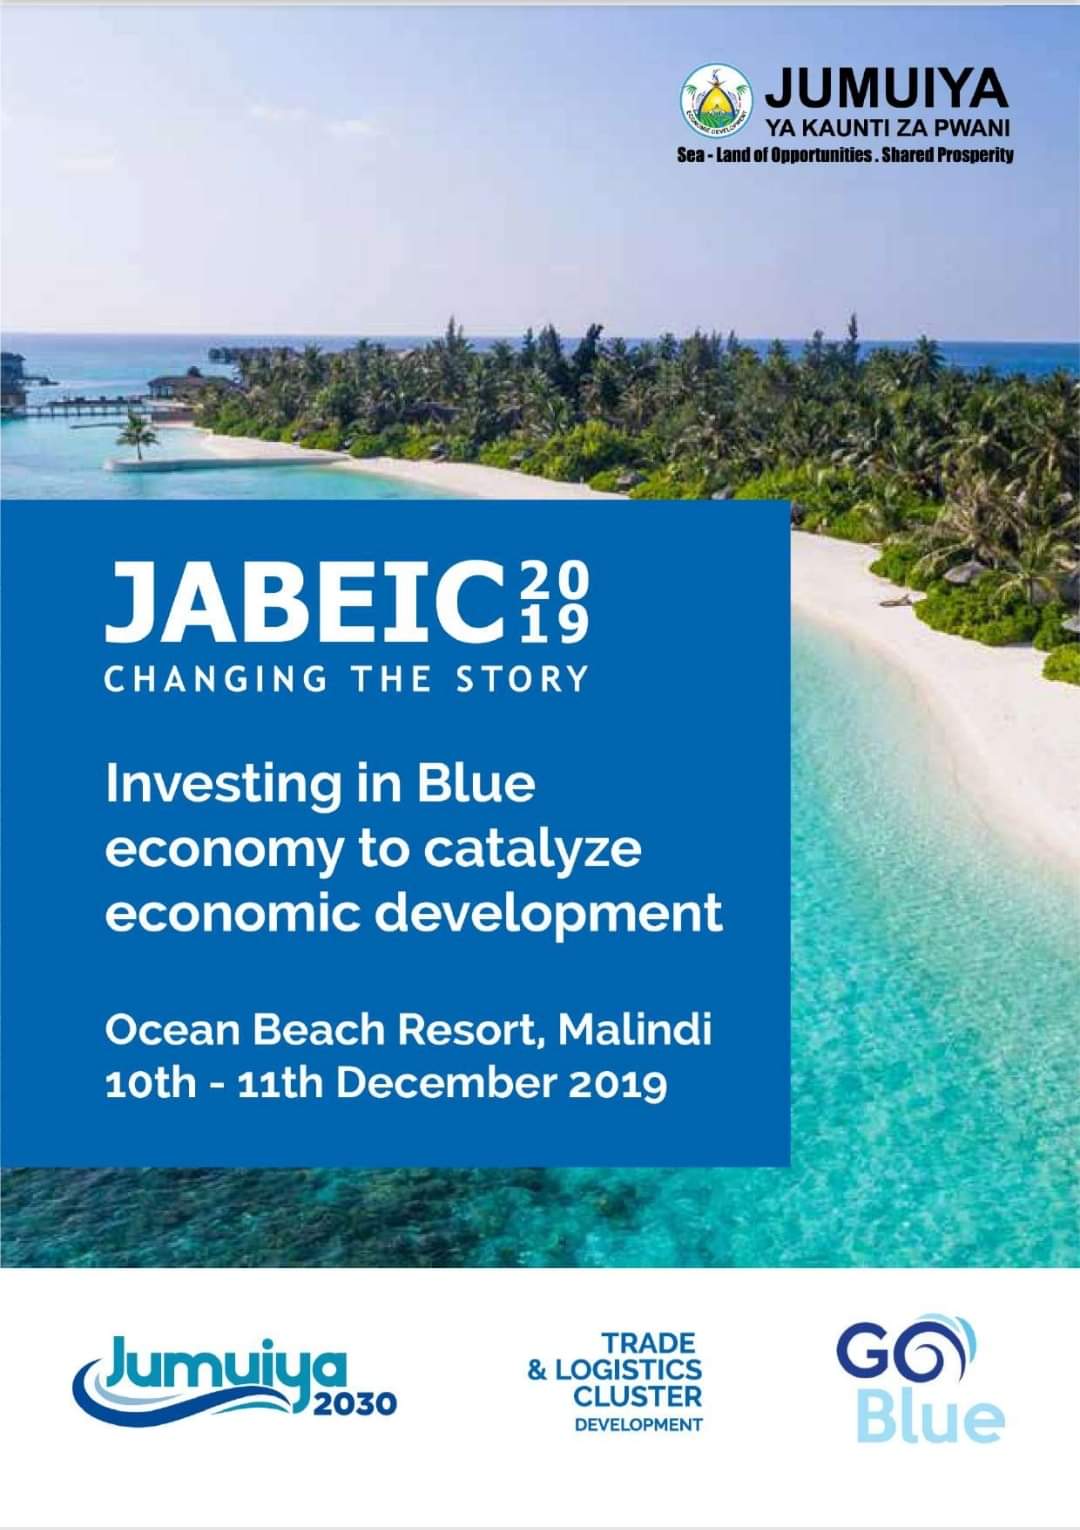 Investing in Blue economy to catalyze economic development